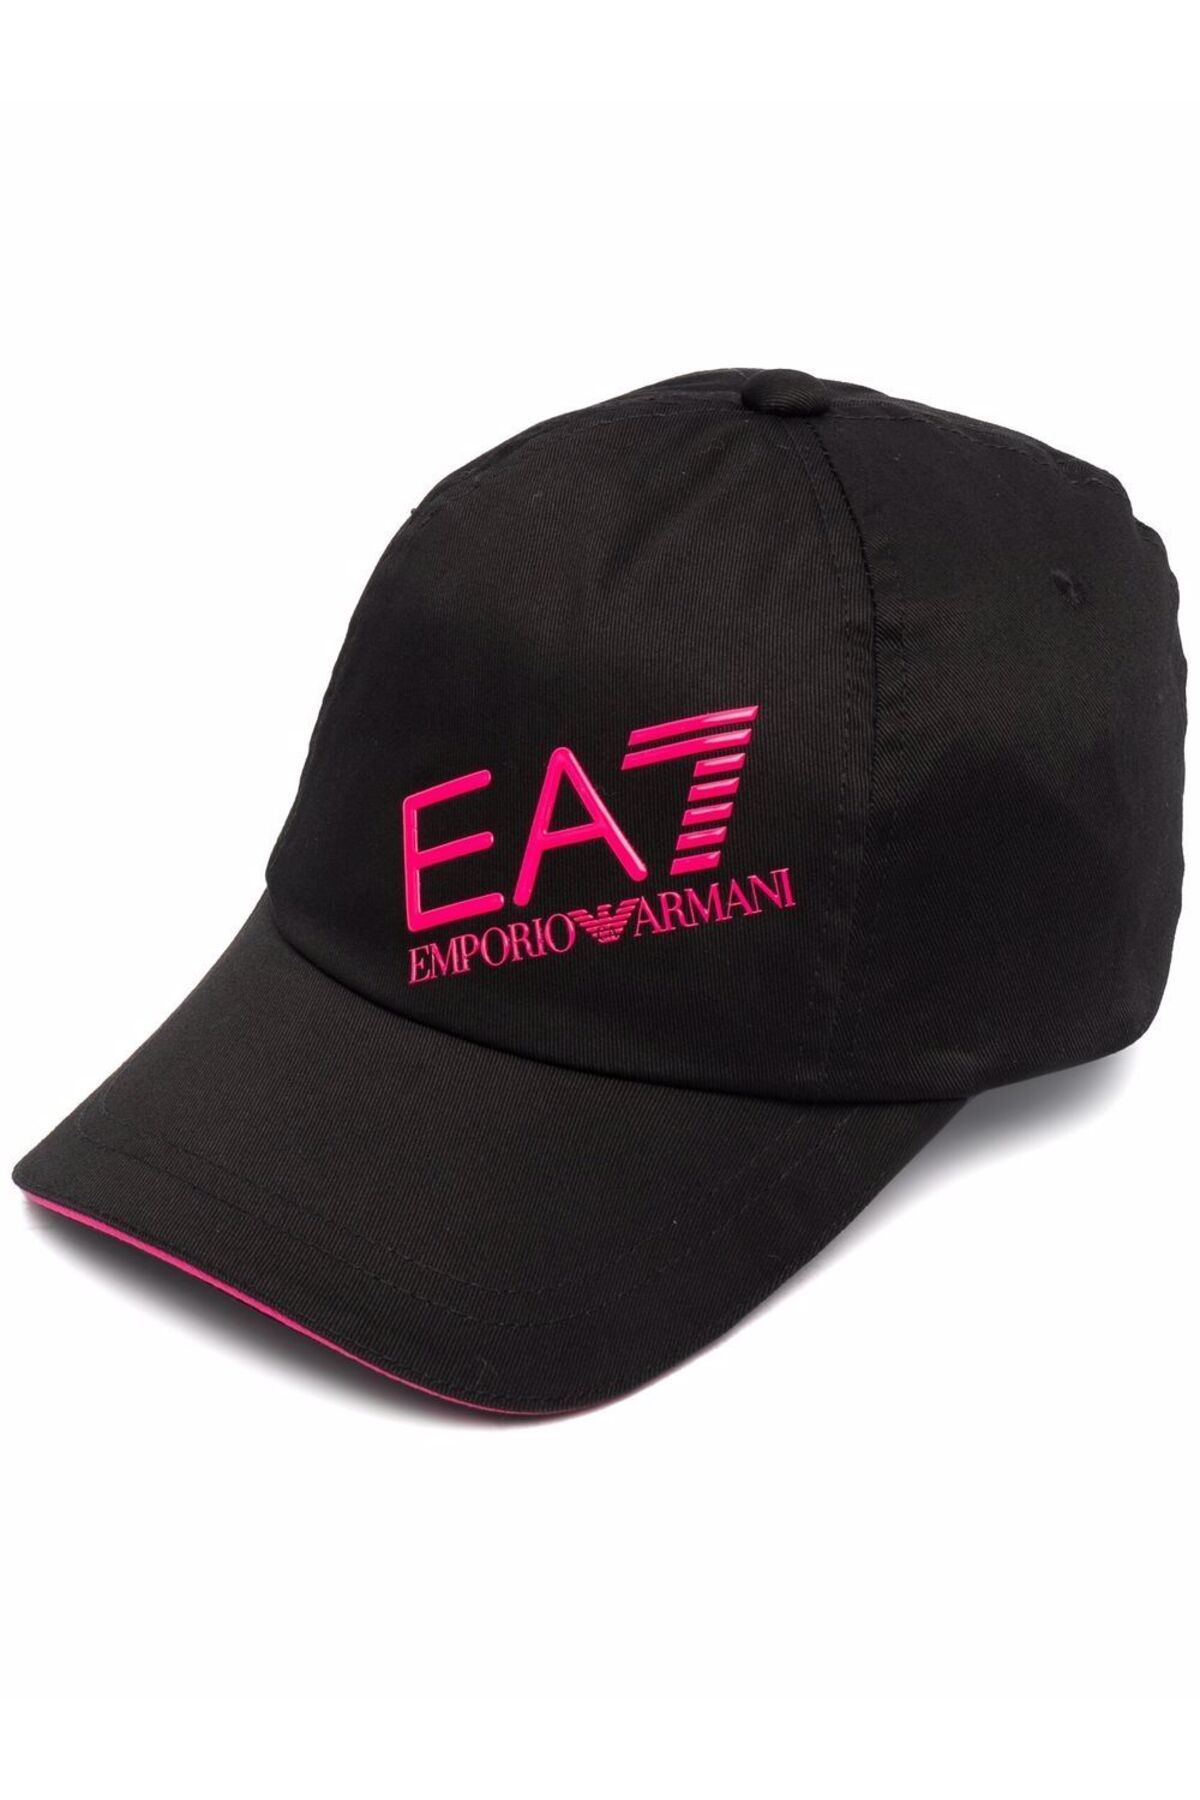 Emporio Armani Kadın Şapka 284952-2r101-00020